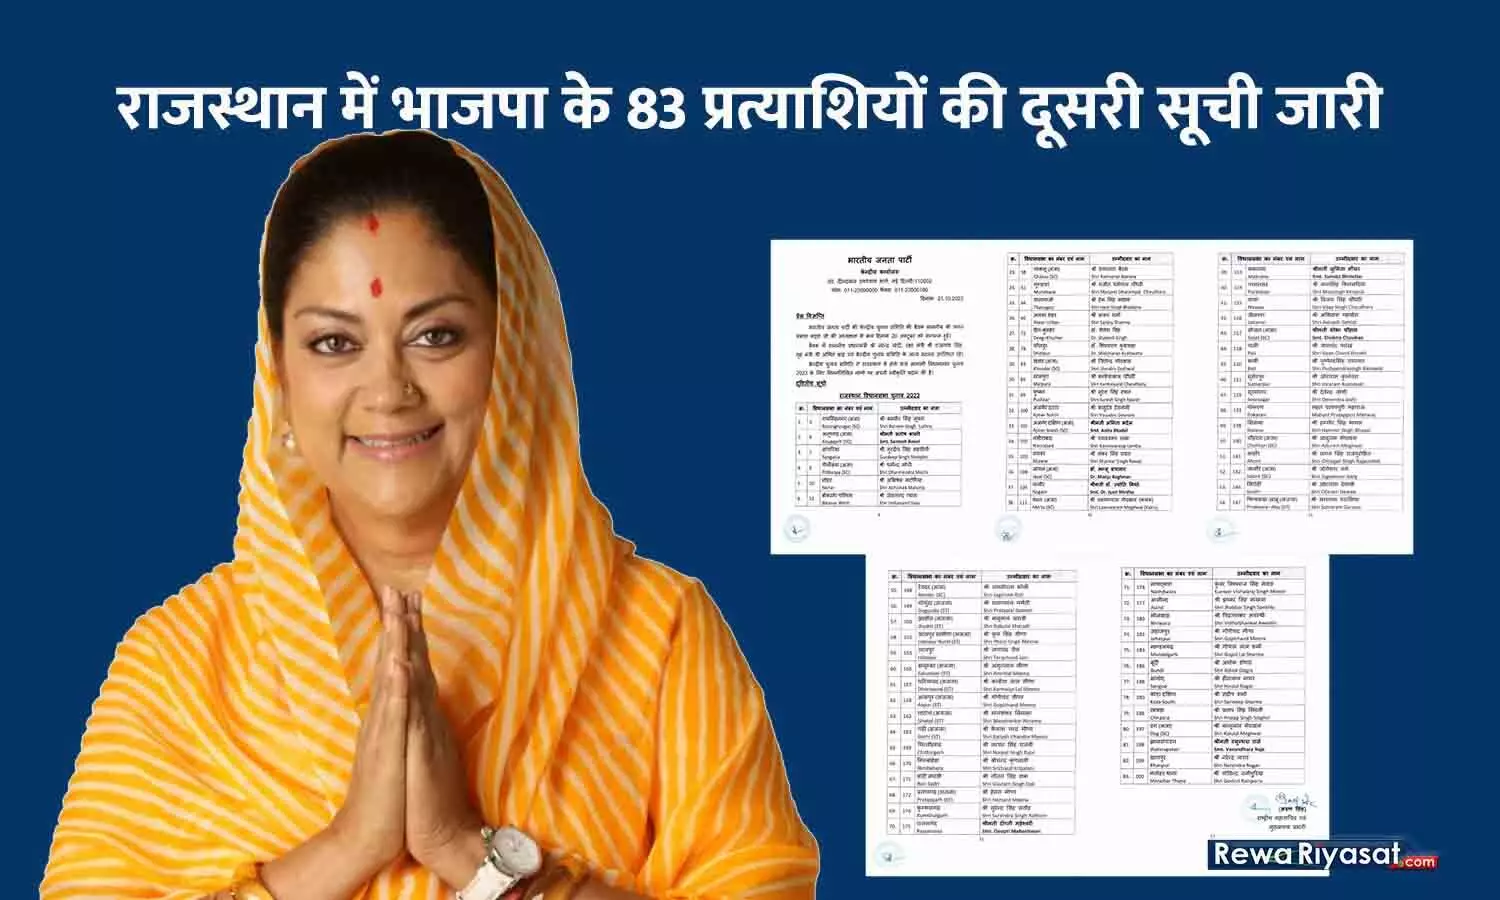 राजस्थान में भाजपा के 83 प्रत्याशियों की दूसरी सूची जारी, वसुंधरा राजे को झालरापाटन से टिकट